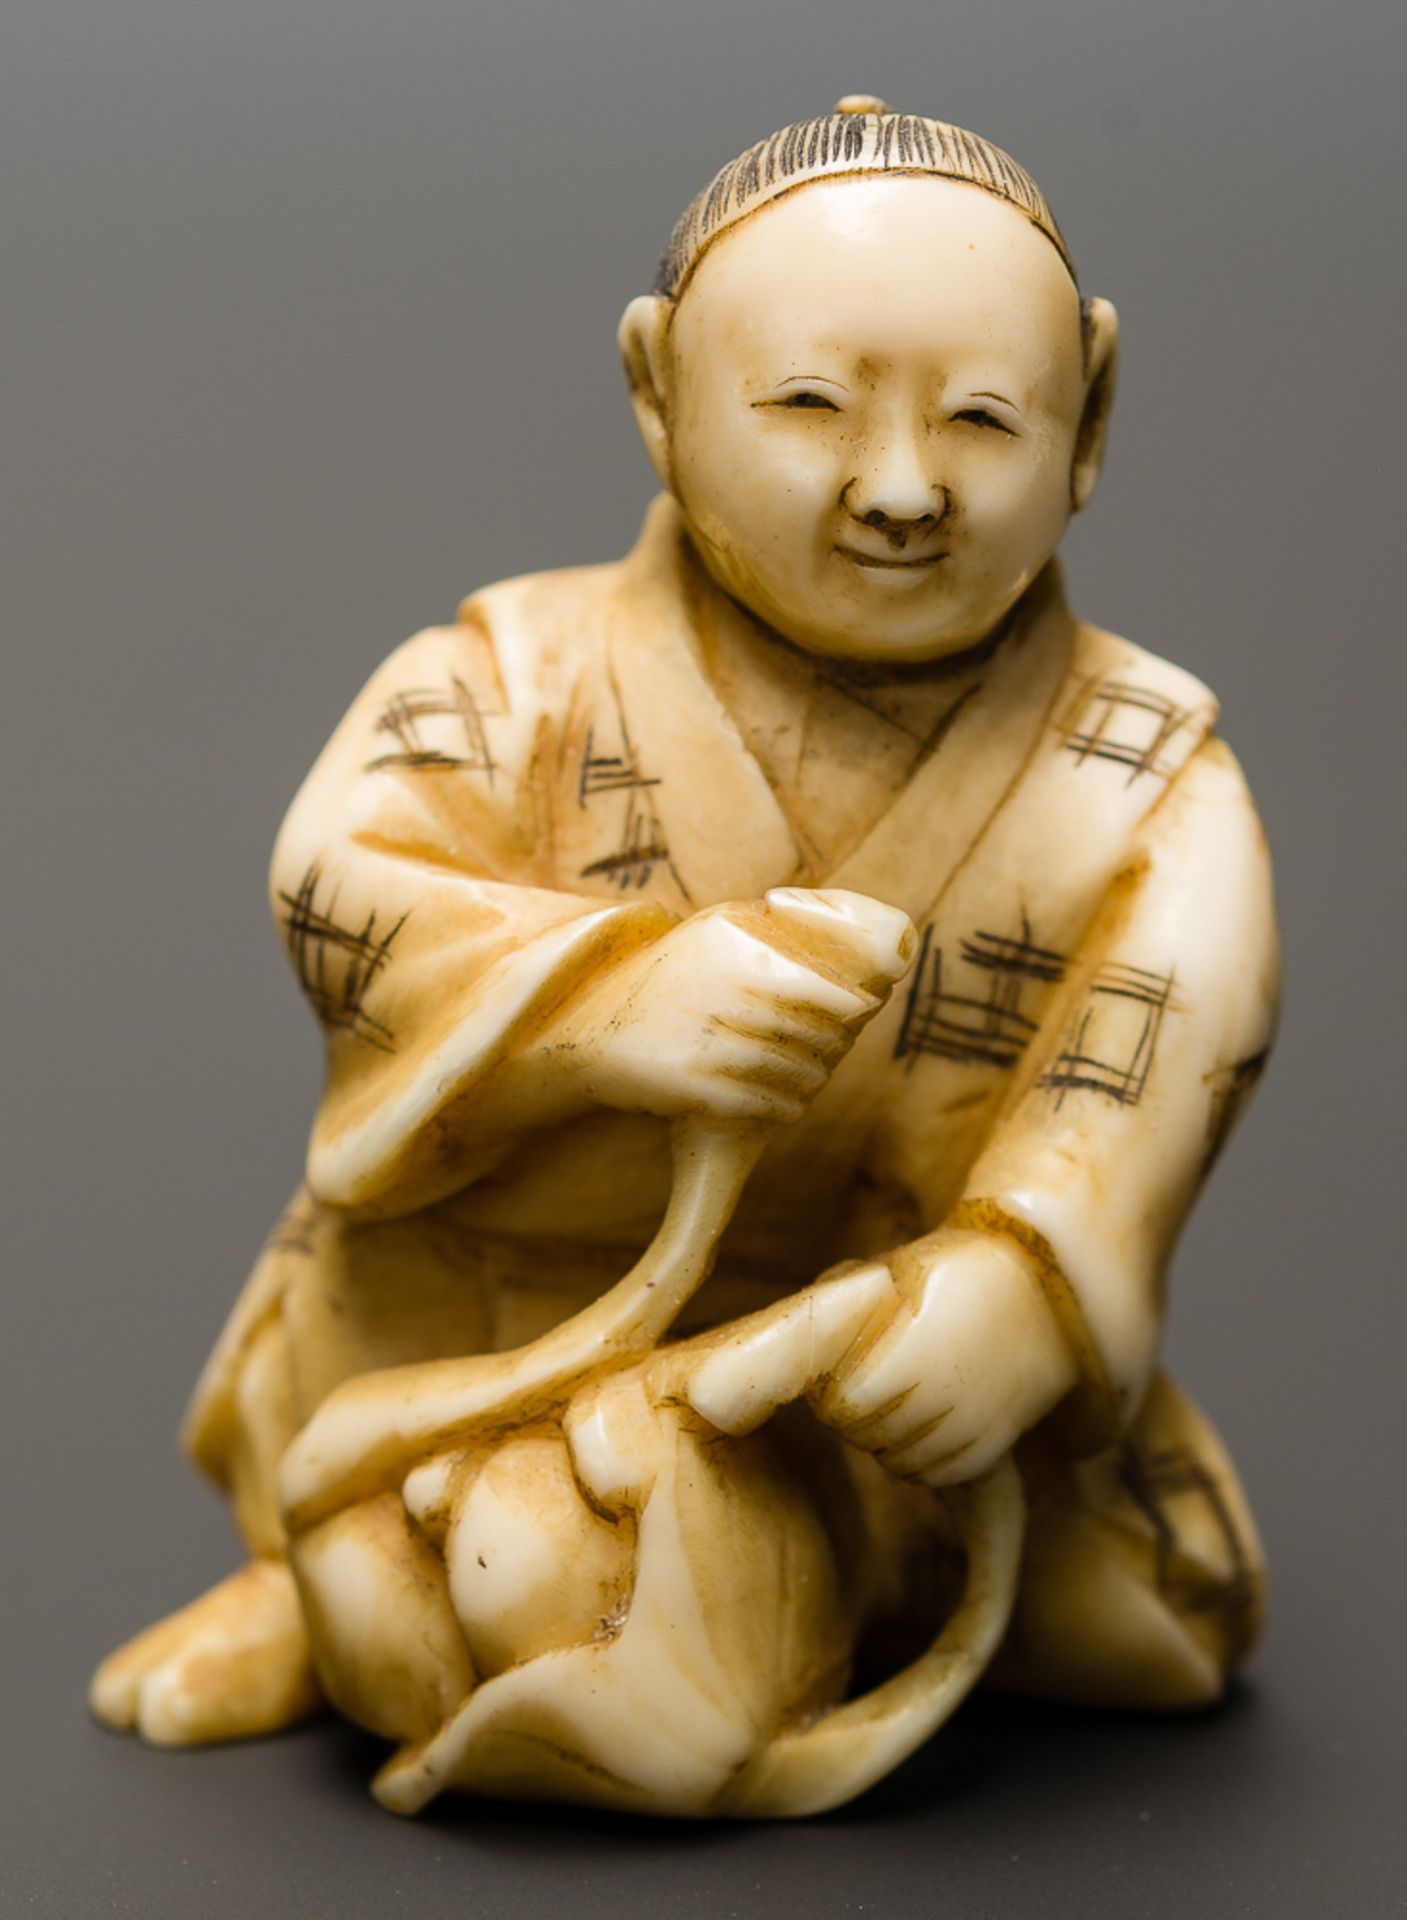 MANN MIT FRÜCHTEN
Netsuke-Okimono, Elfenbein. Japan, Meiji-ZeitHalb knieender Mann, der aus seinem